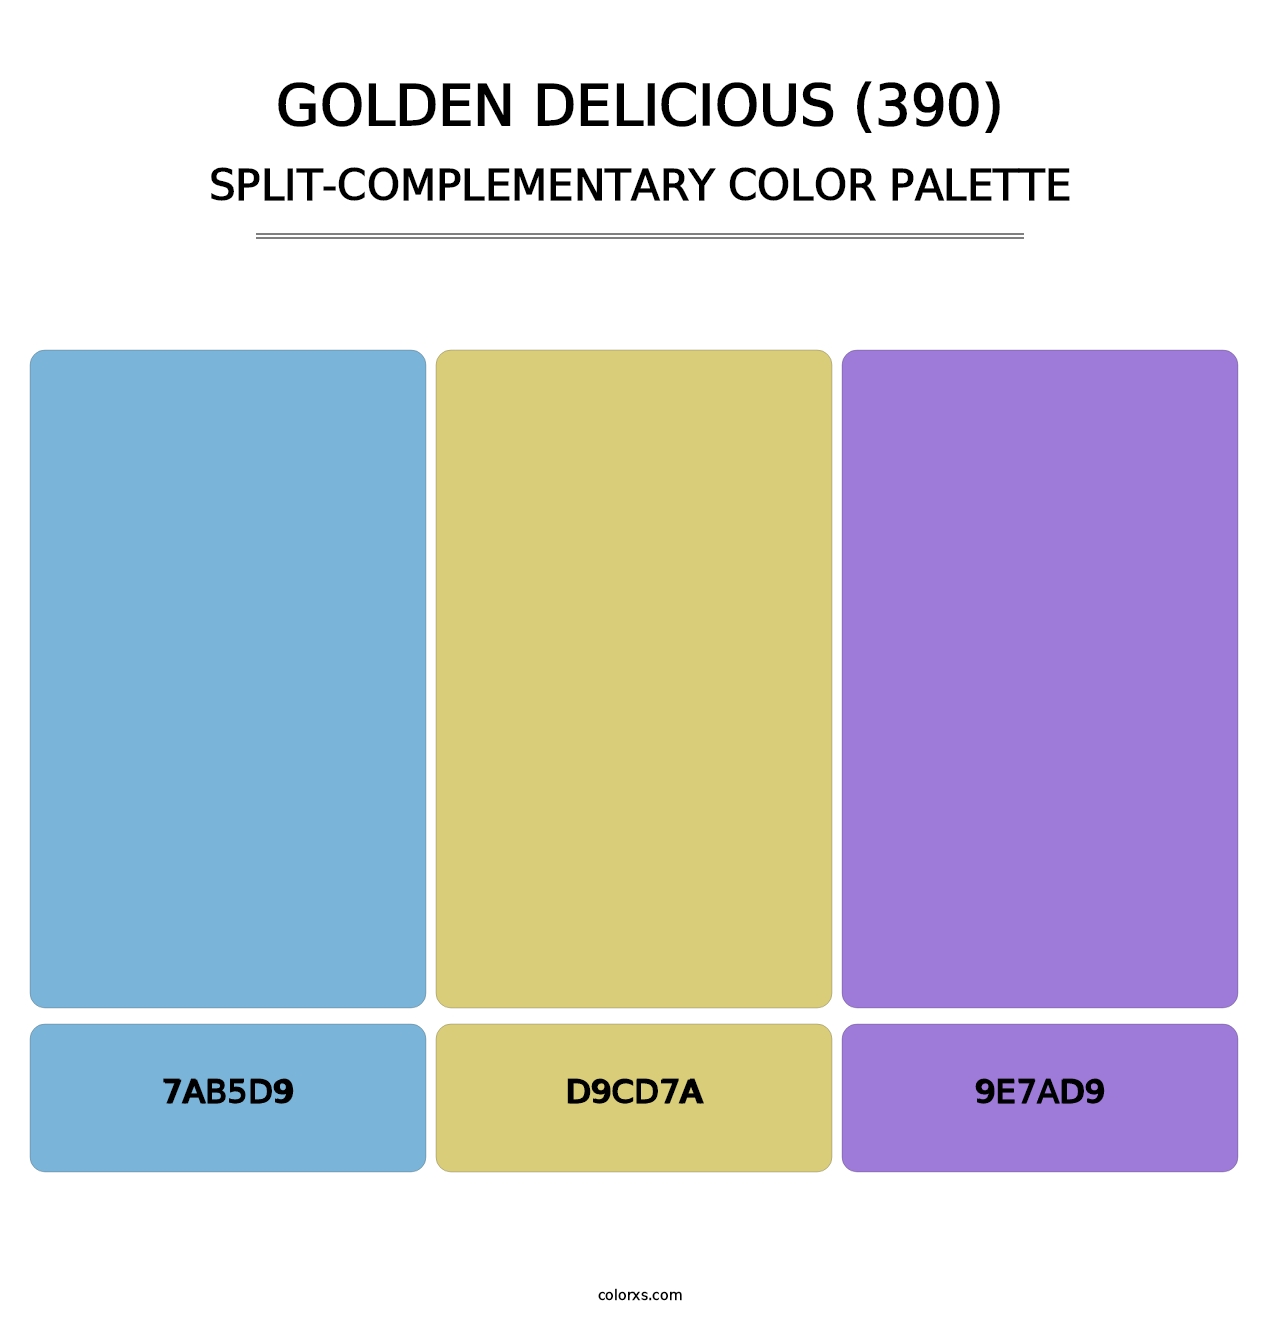 Golden Delicious (390) - Split-Complementary Color Palette